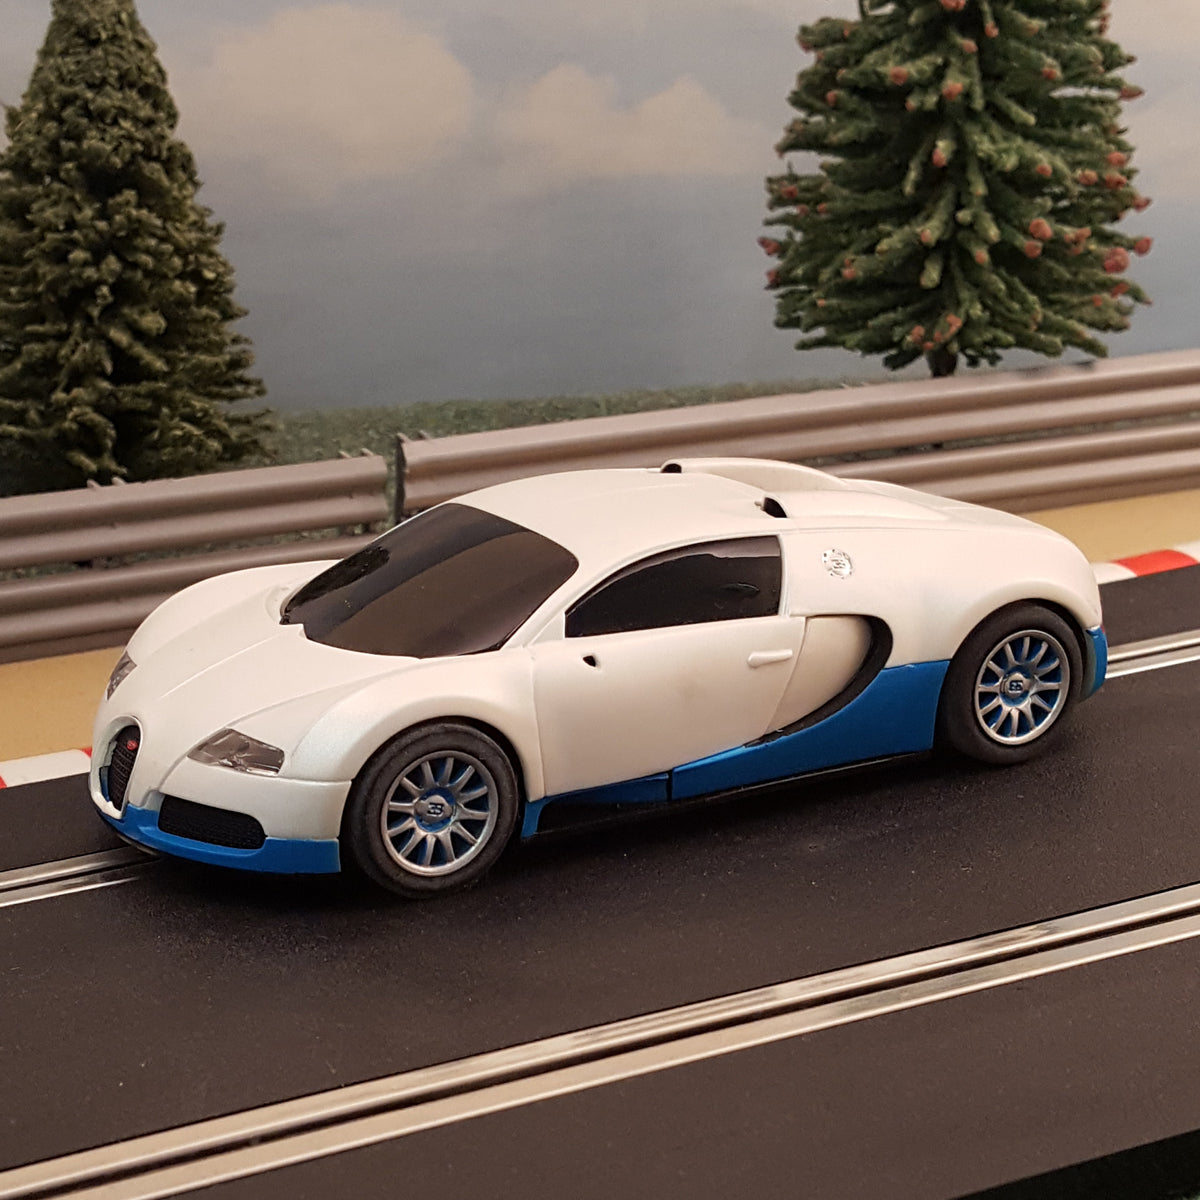 Juego de pistas Scalextric Sport 1:32 - Diseño grande con coches Bugatti Veyron #A